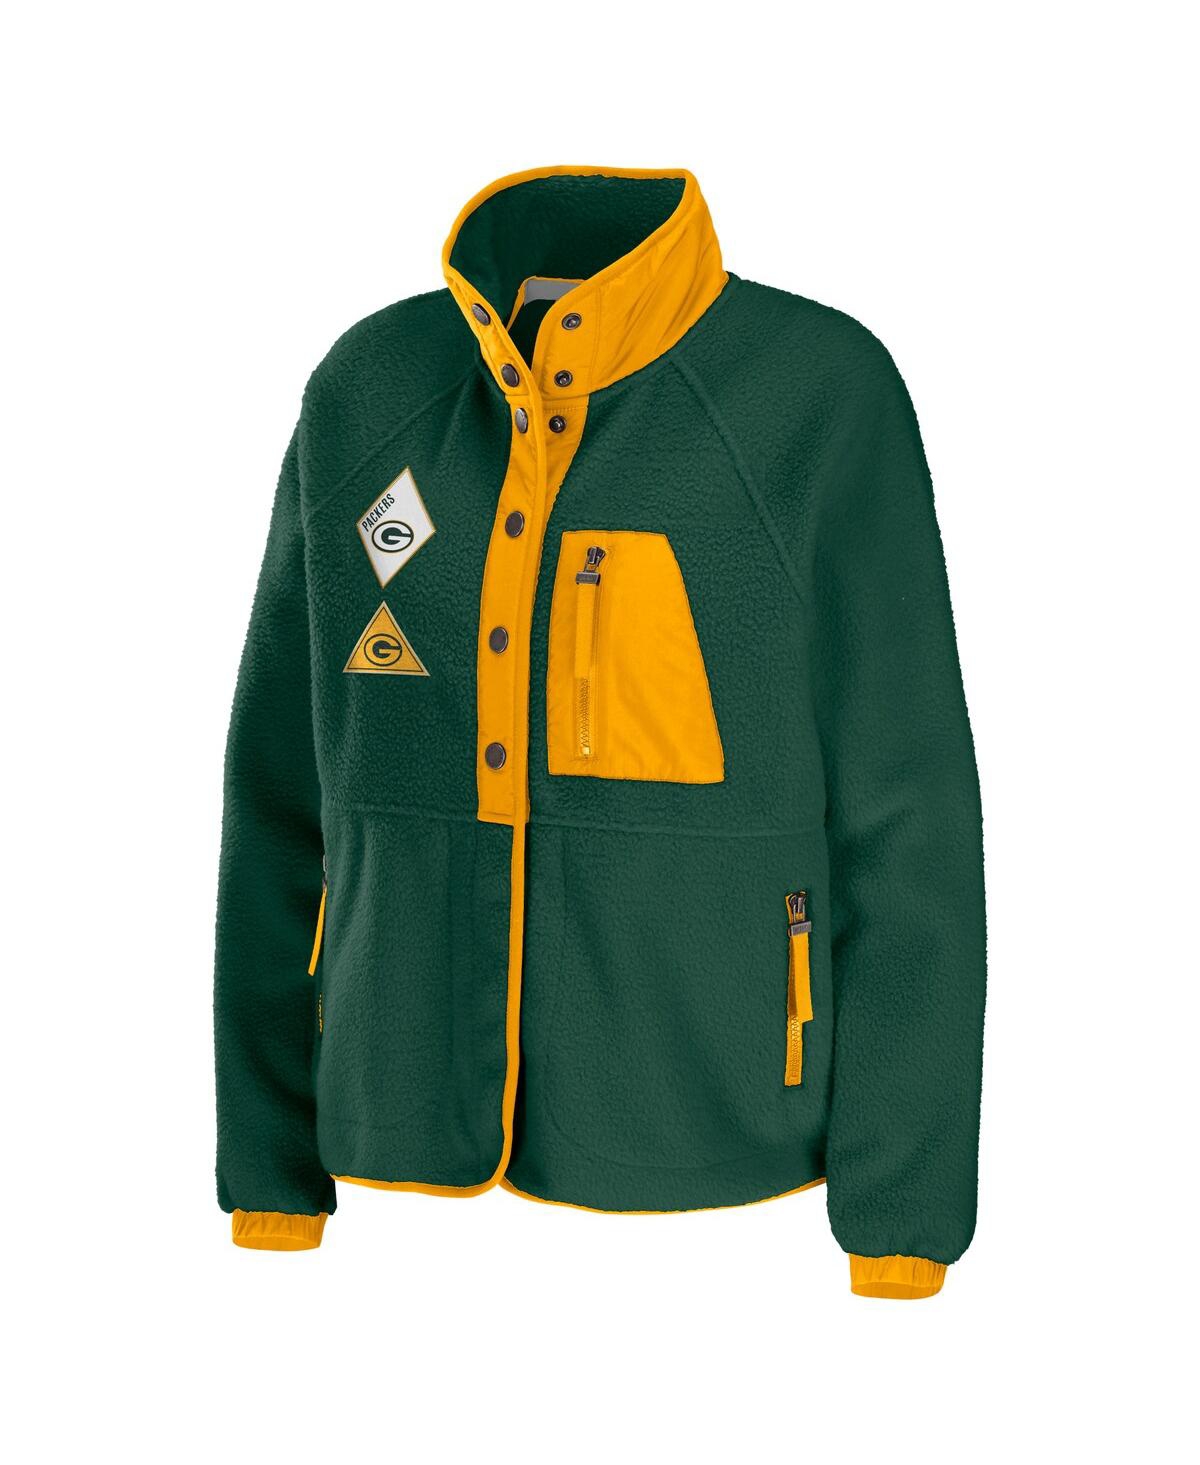 Shop Wear By Erin Andrews Women's  Green Green Bay Packers Polar Fleece Raglan Full-snap Jacket